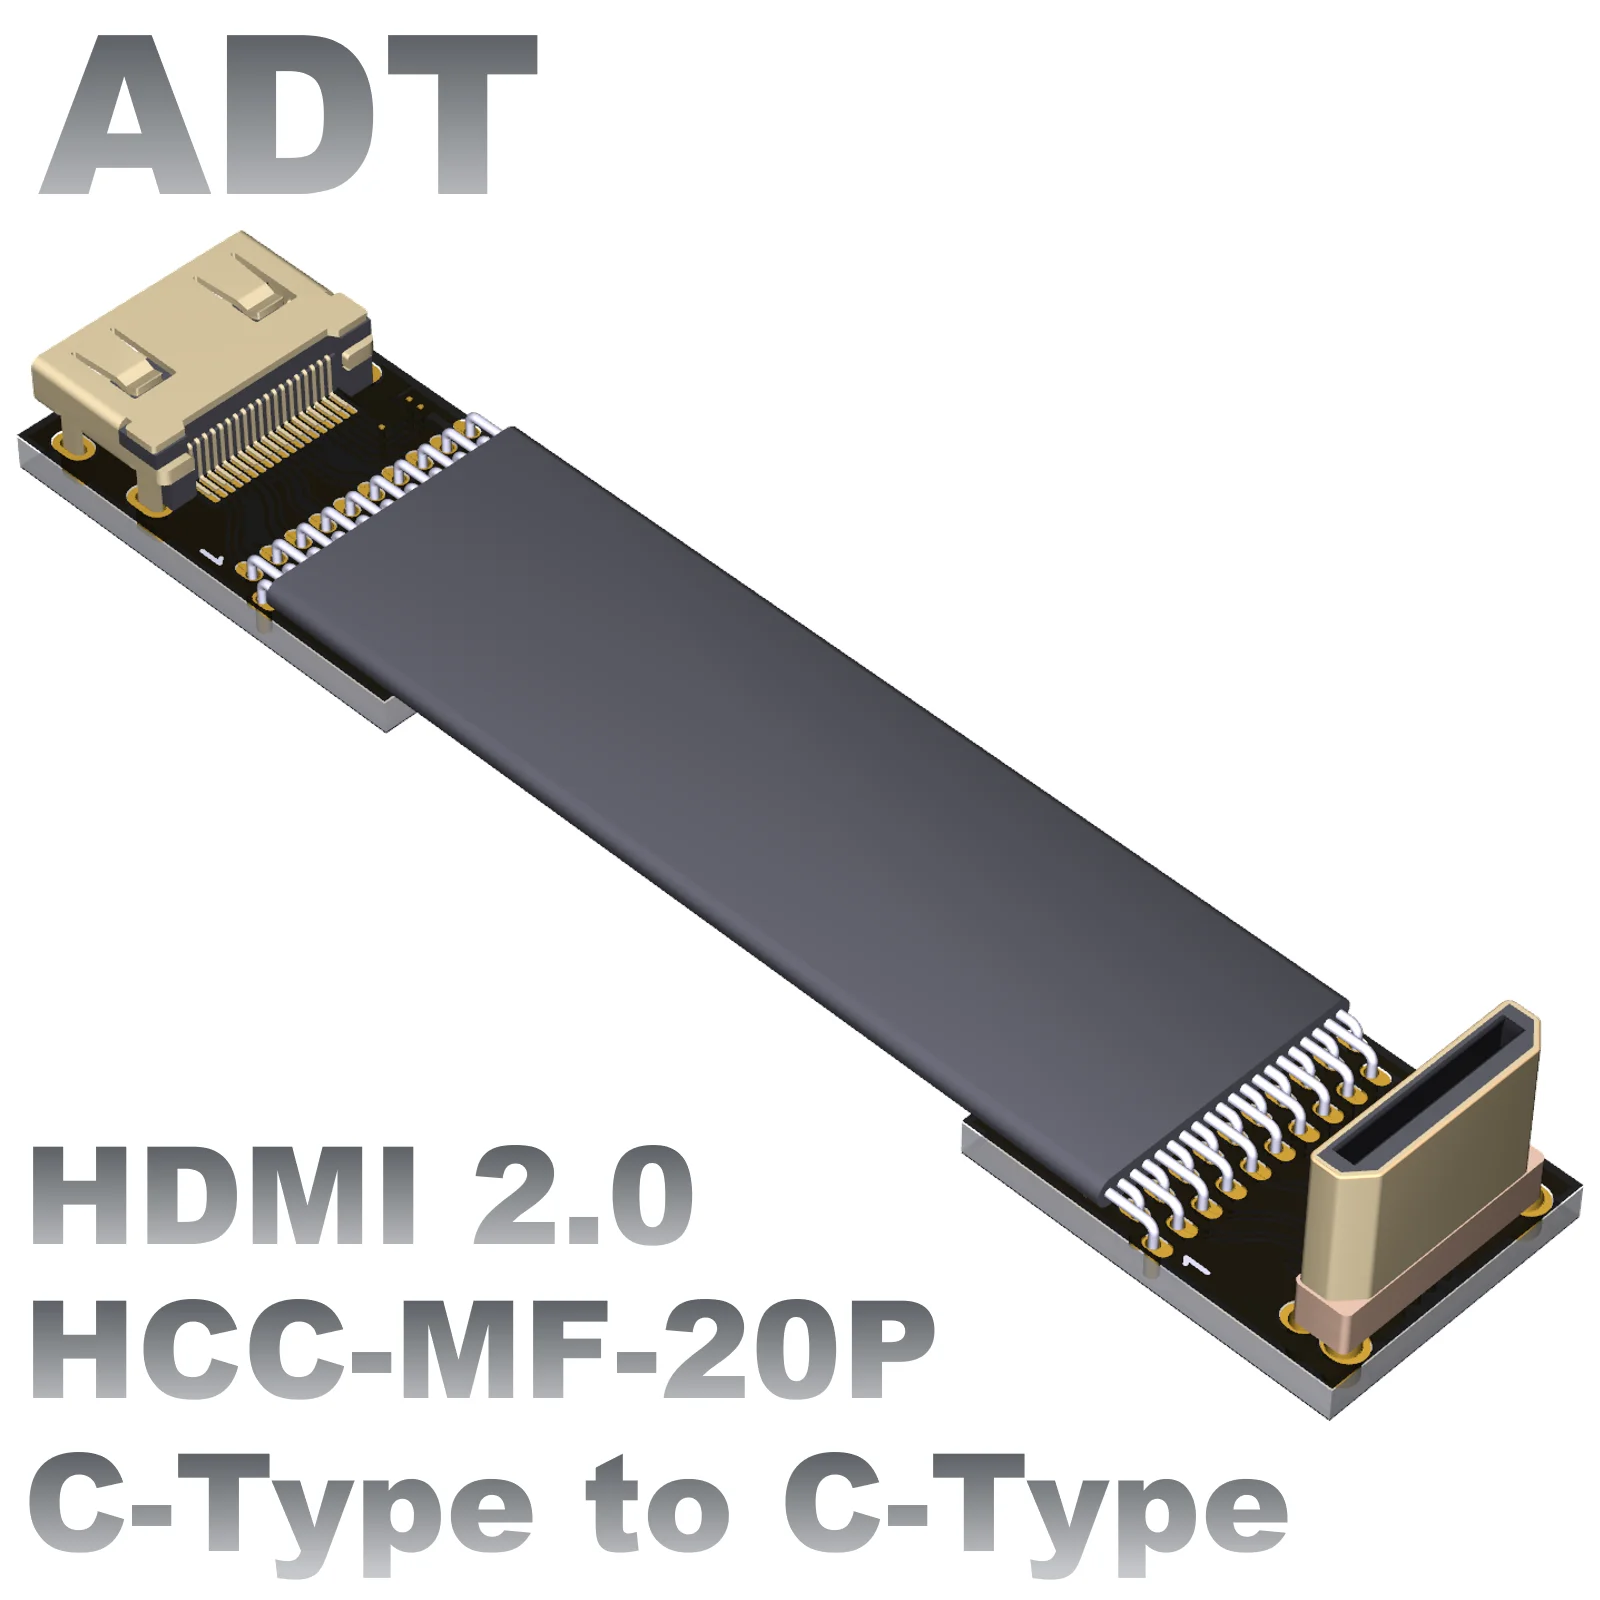 

Мини-удлинитель ADT с разъемами «штырь-гнездо» и поддержкой HDMI